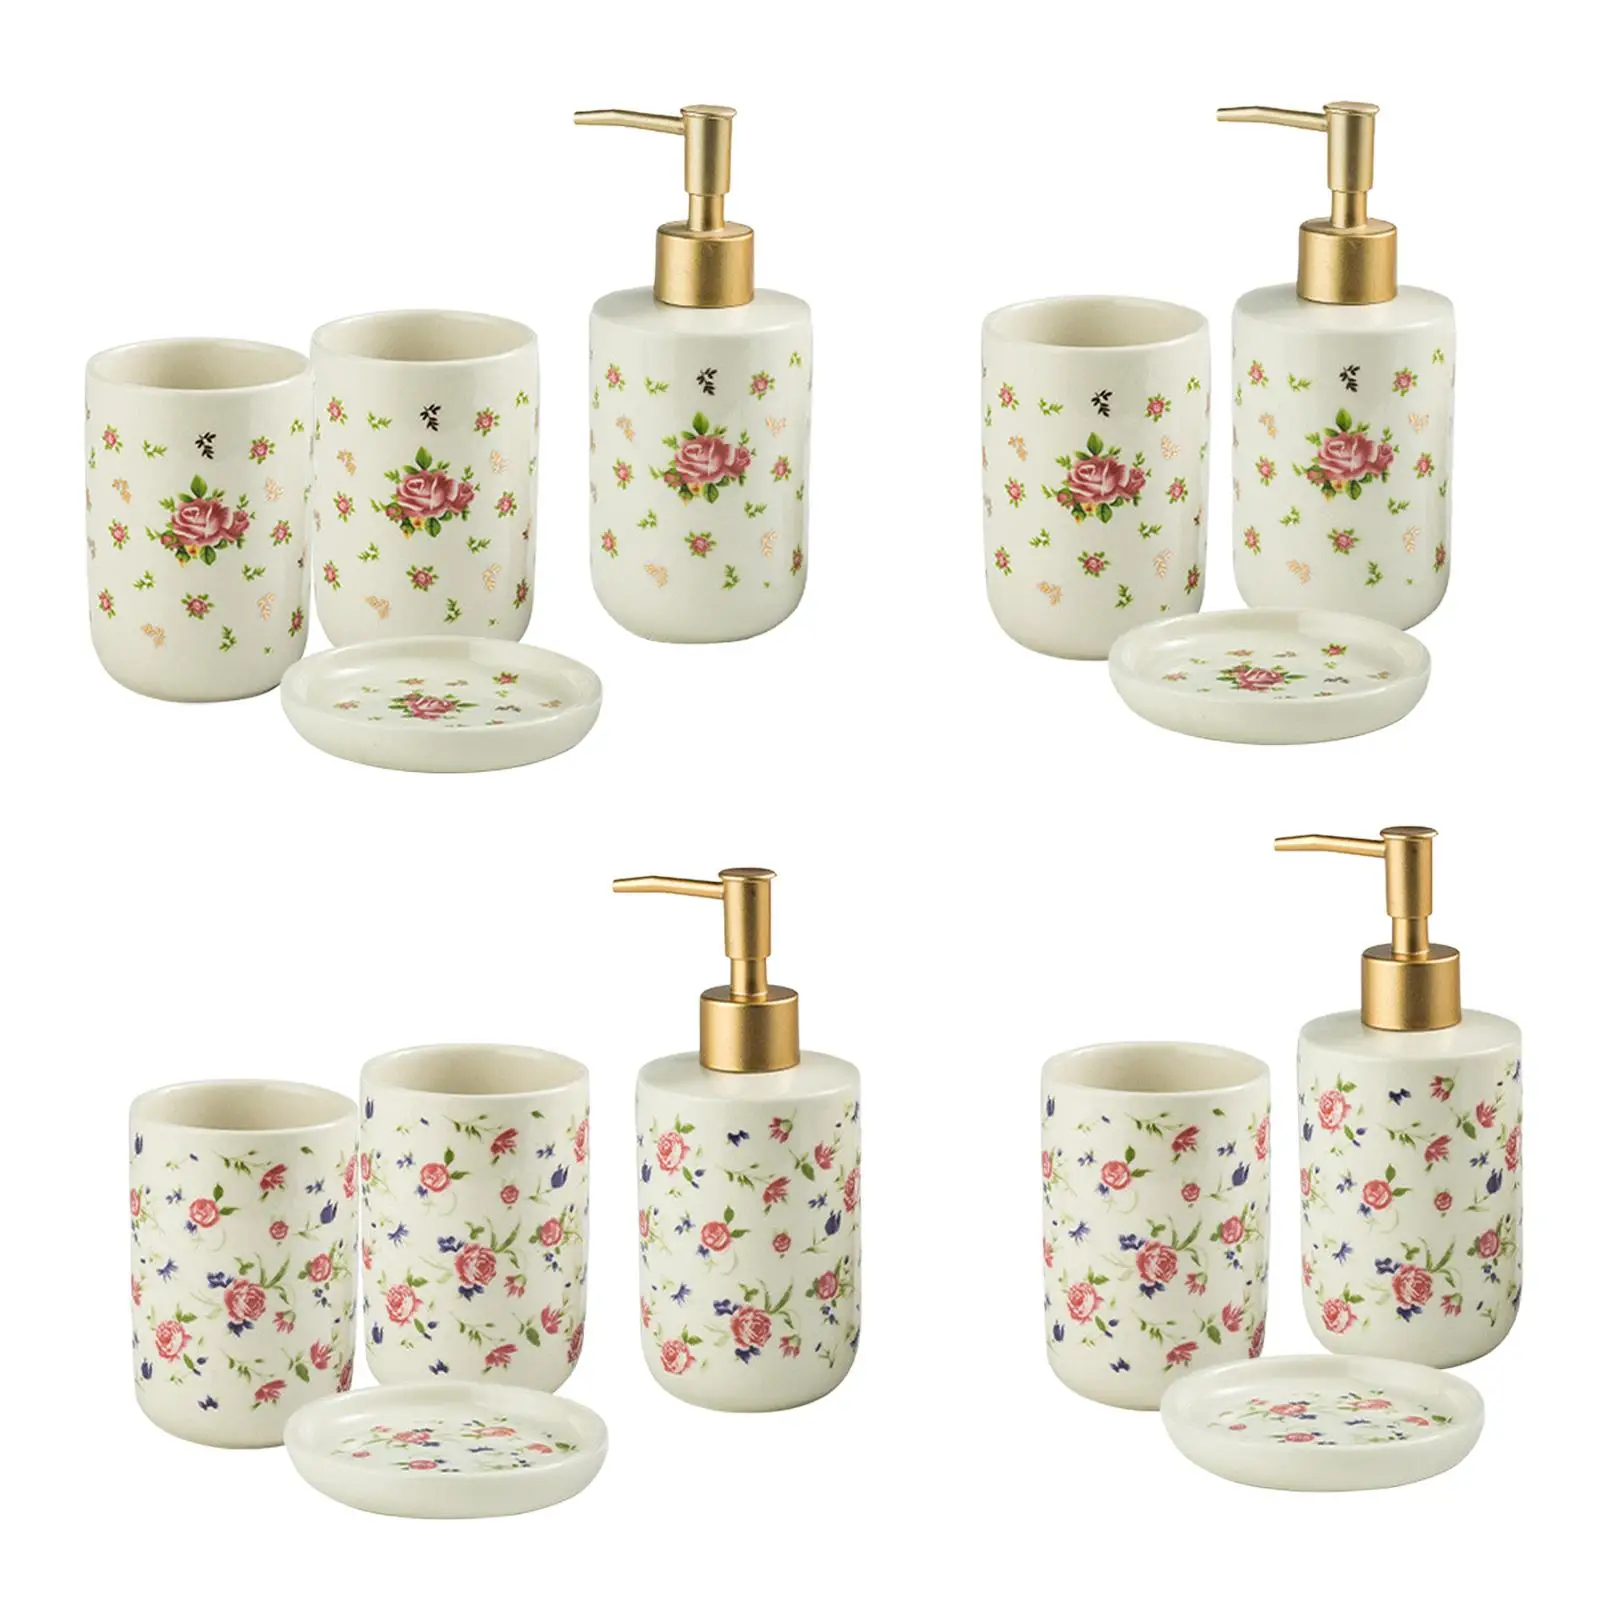 Ceramic Bathroom Accessory Set, Roses Pattern Lotion Dispenser, Bathroom Tumbler, Exquisite Craftsmanship Soap Dish Decorations